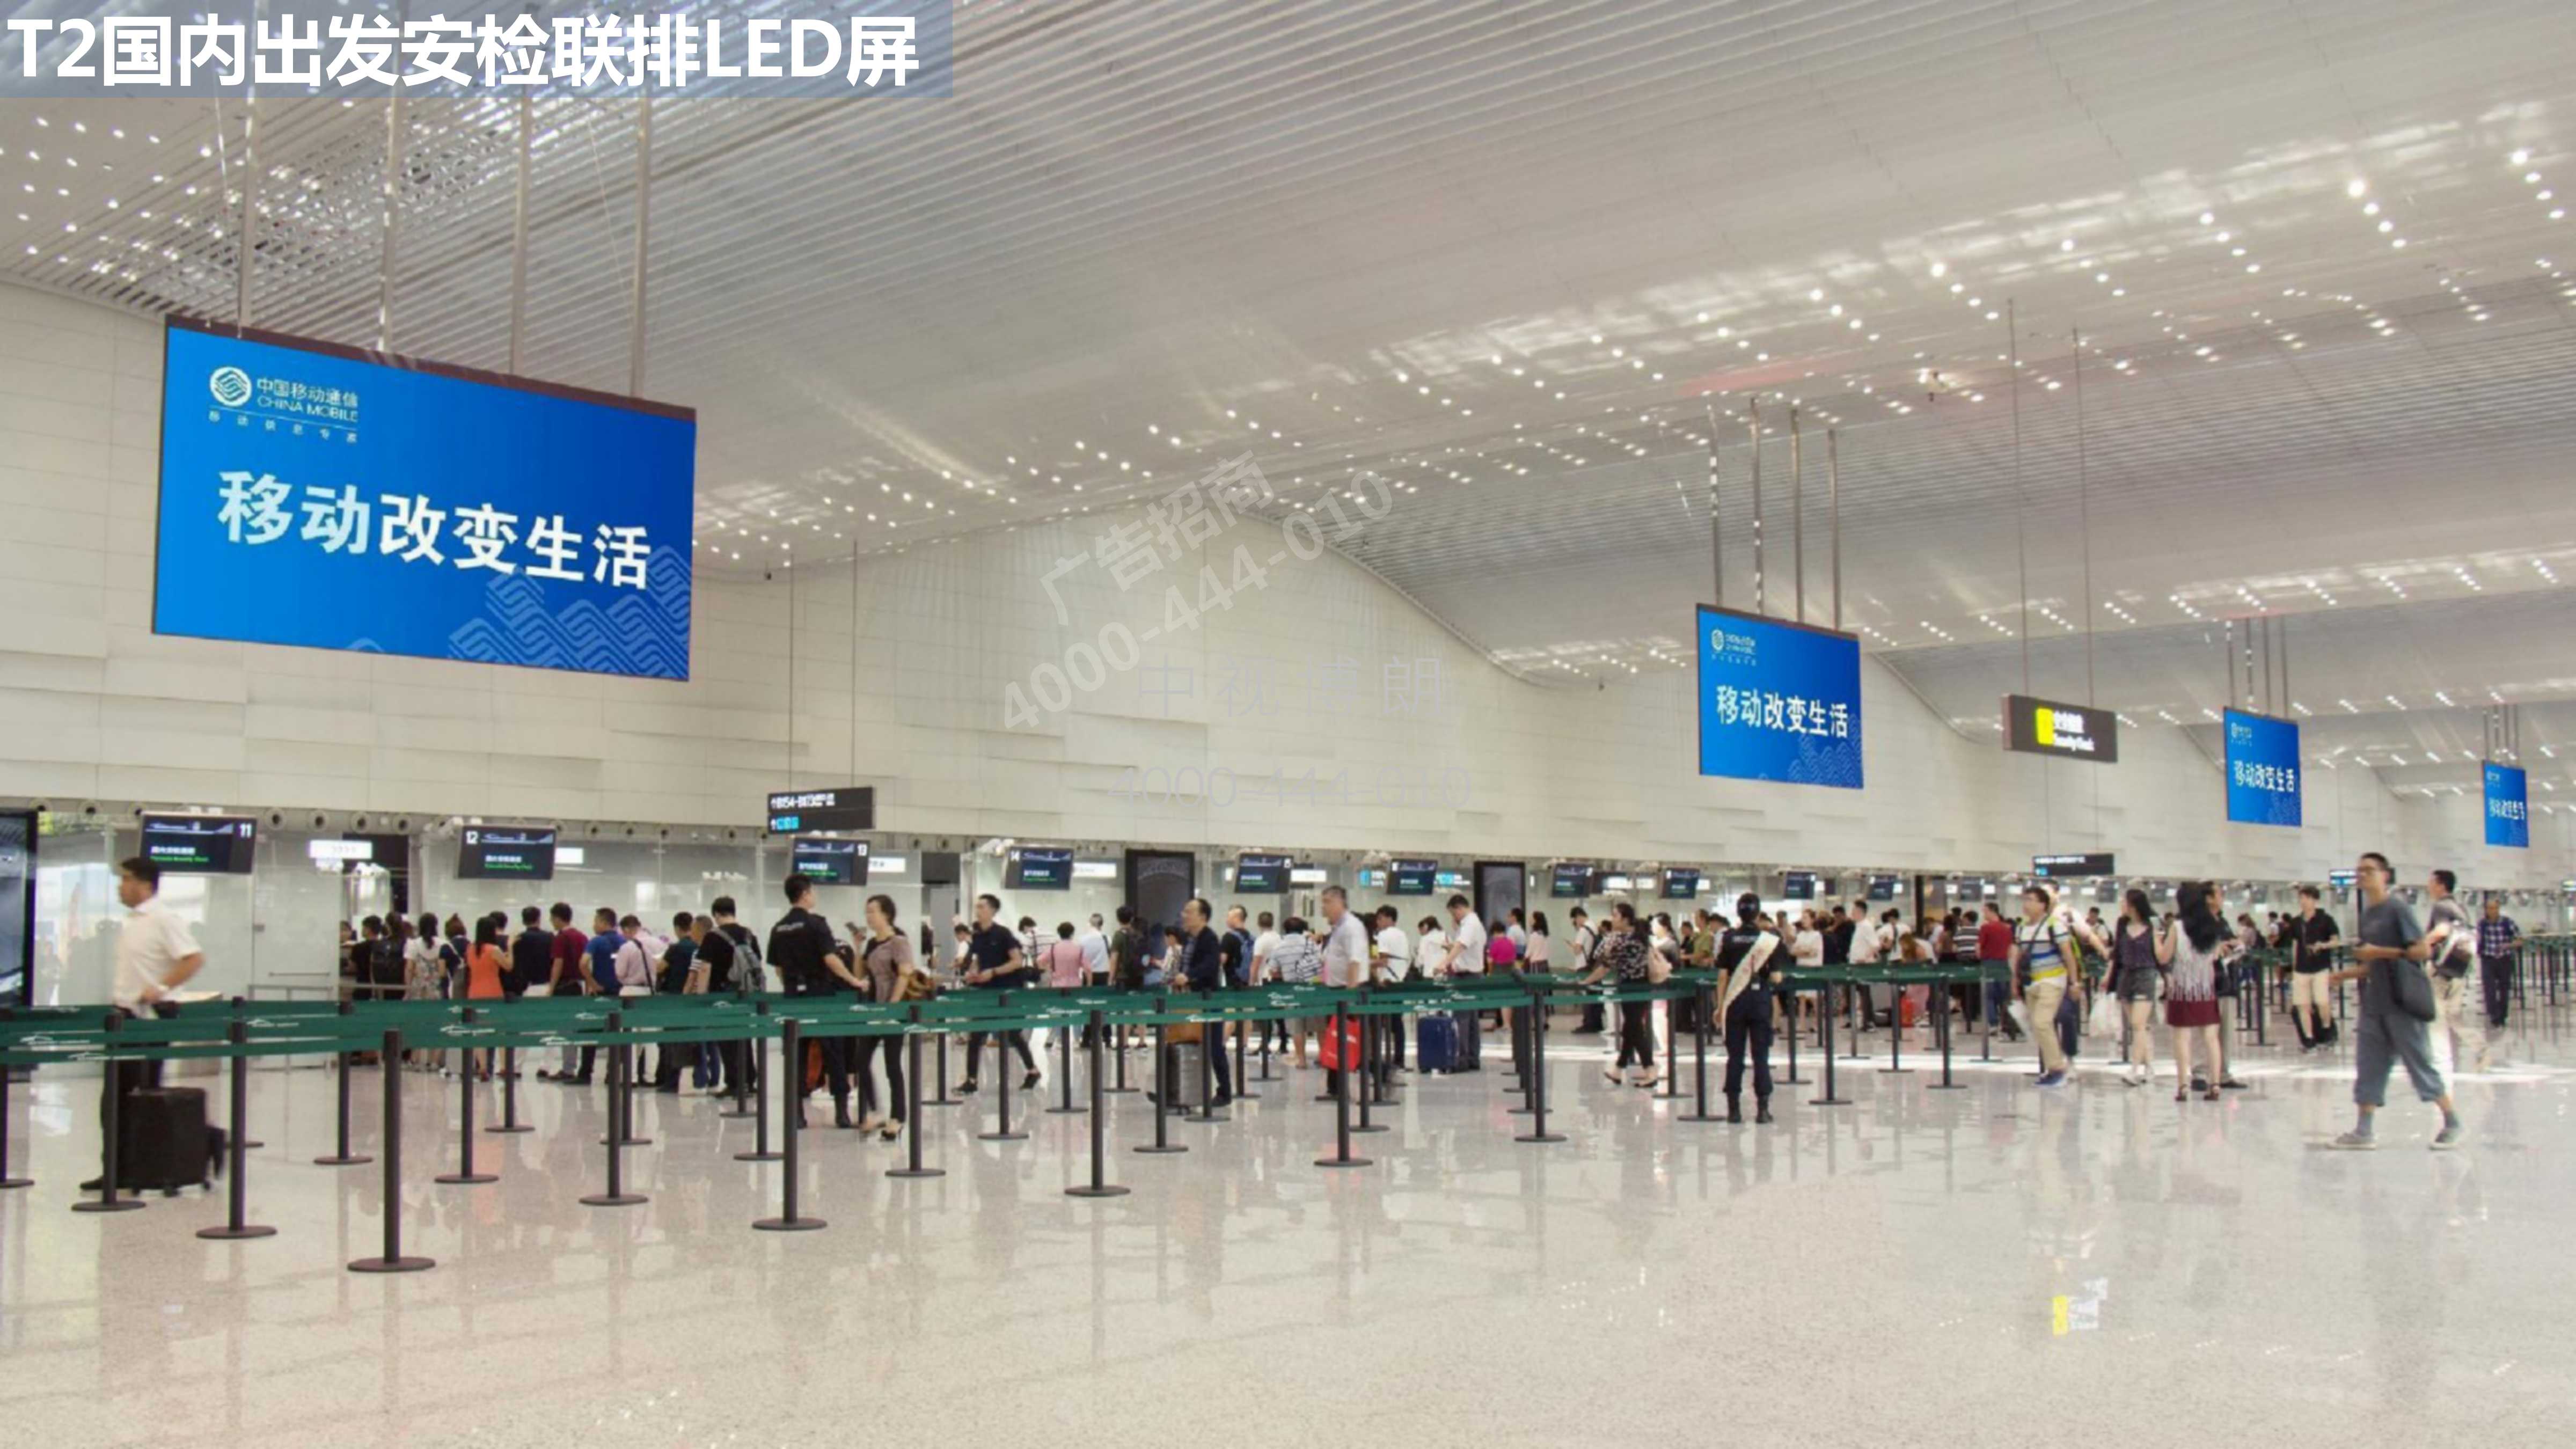 广州机场广告T2国内安检LED屏